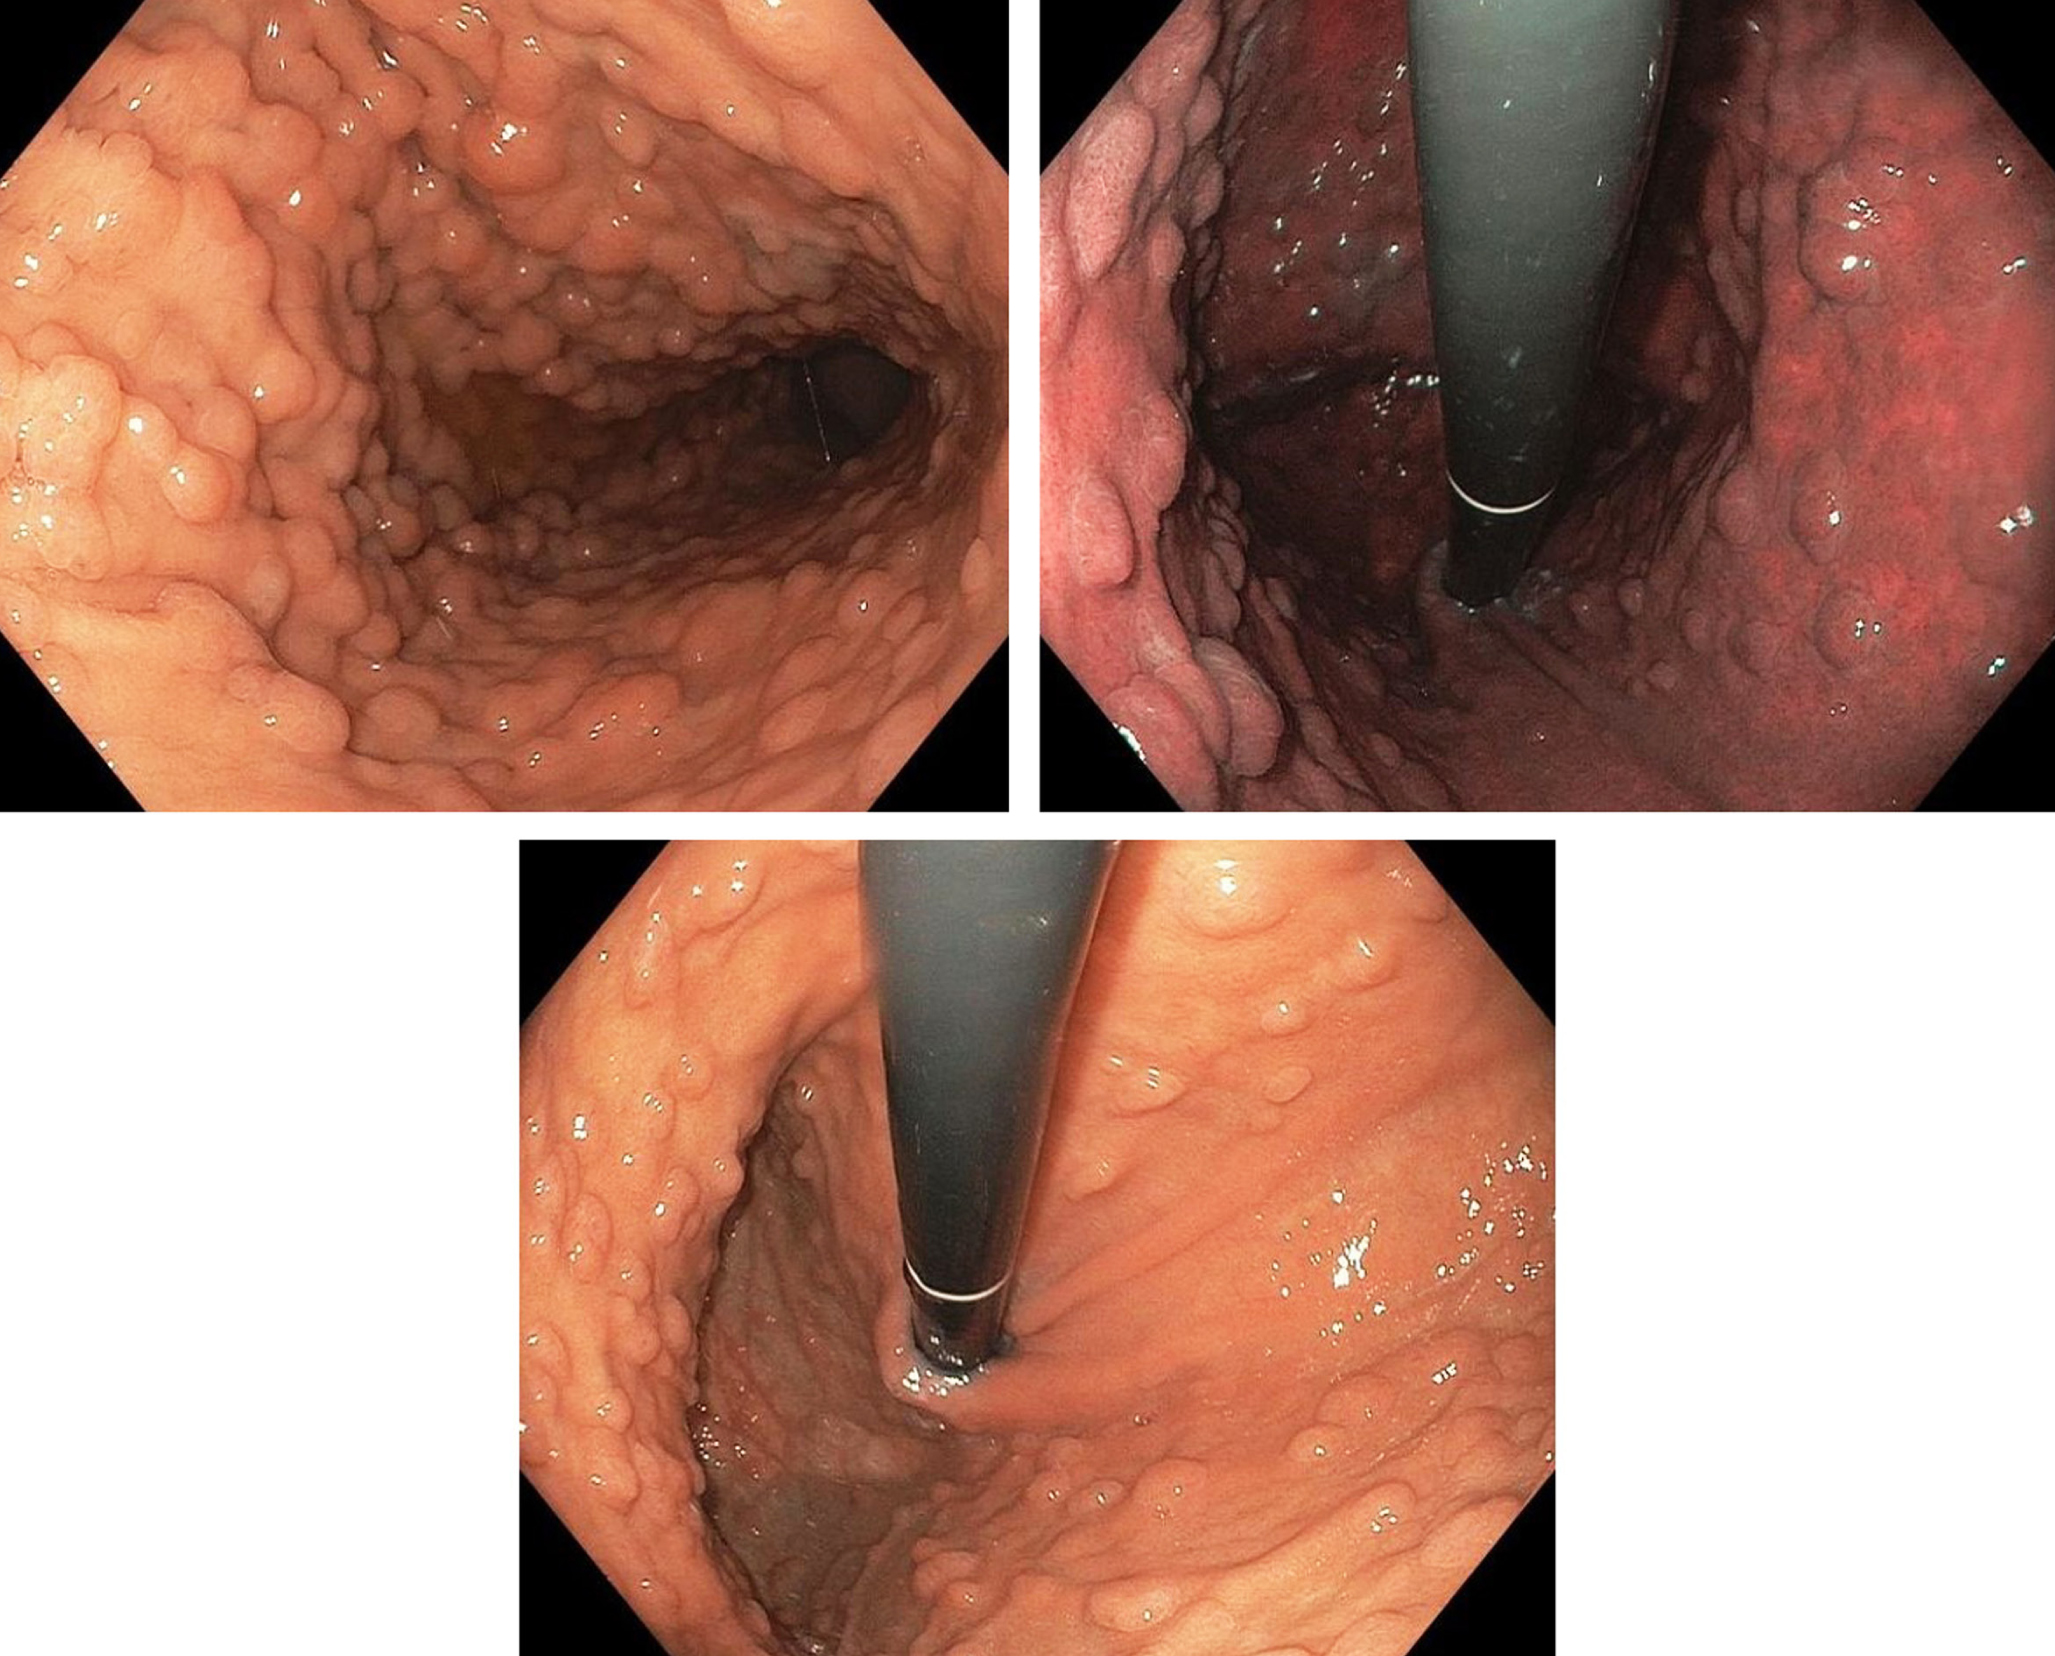 Figura 1. Endoscopia digestiva alta que muestra extensa poliposis difusa del estómago. Imágenes propiedad de los autores.